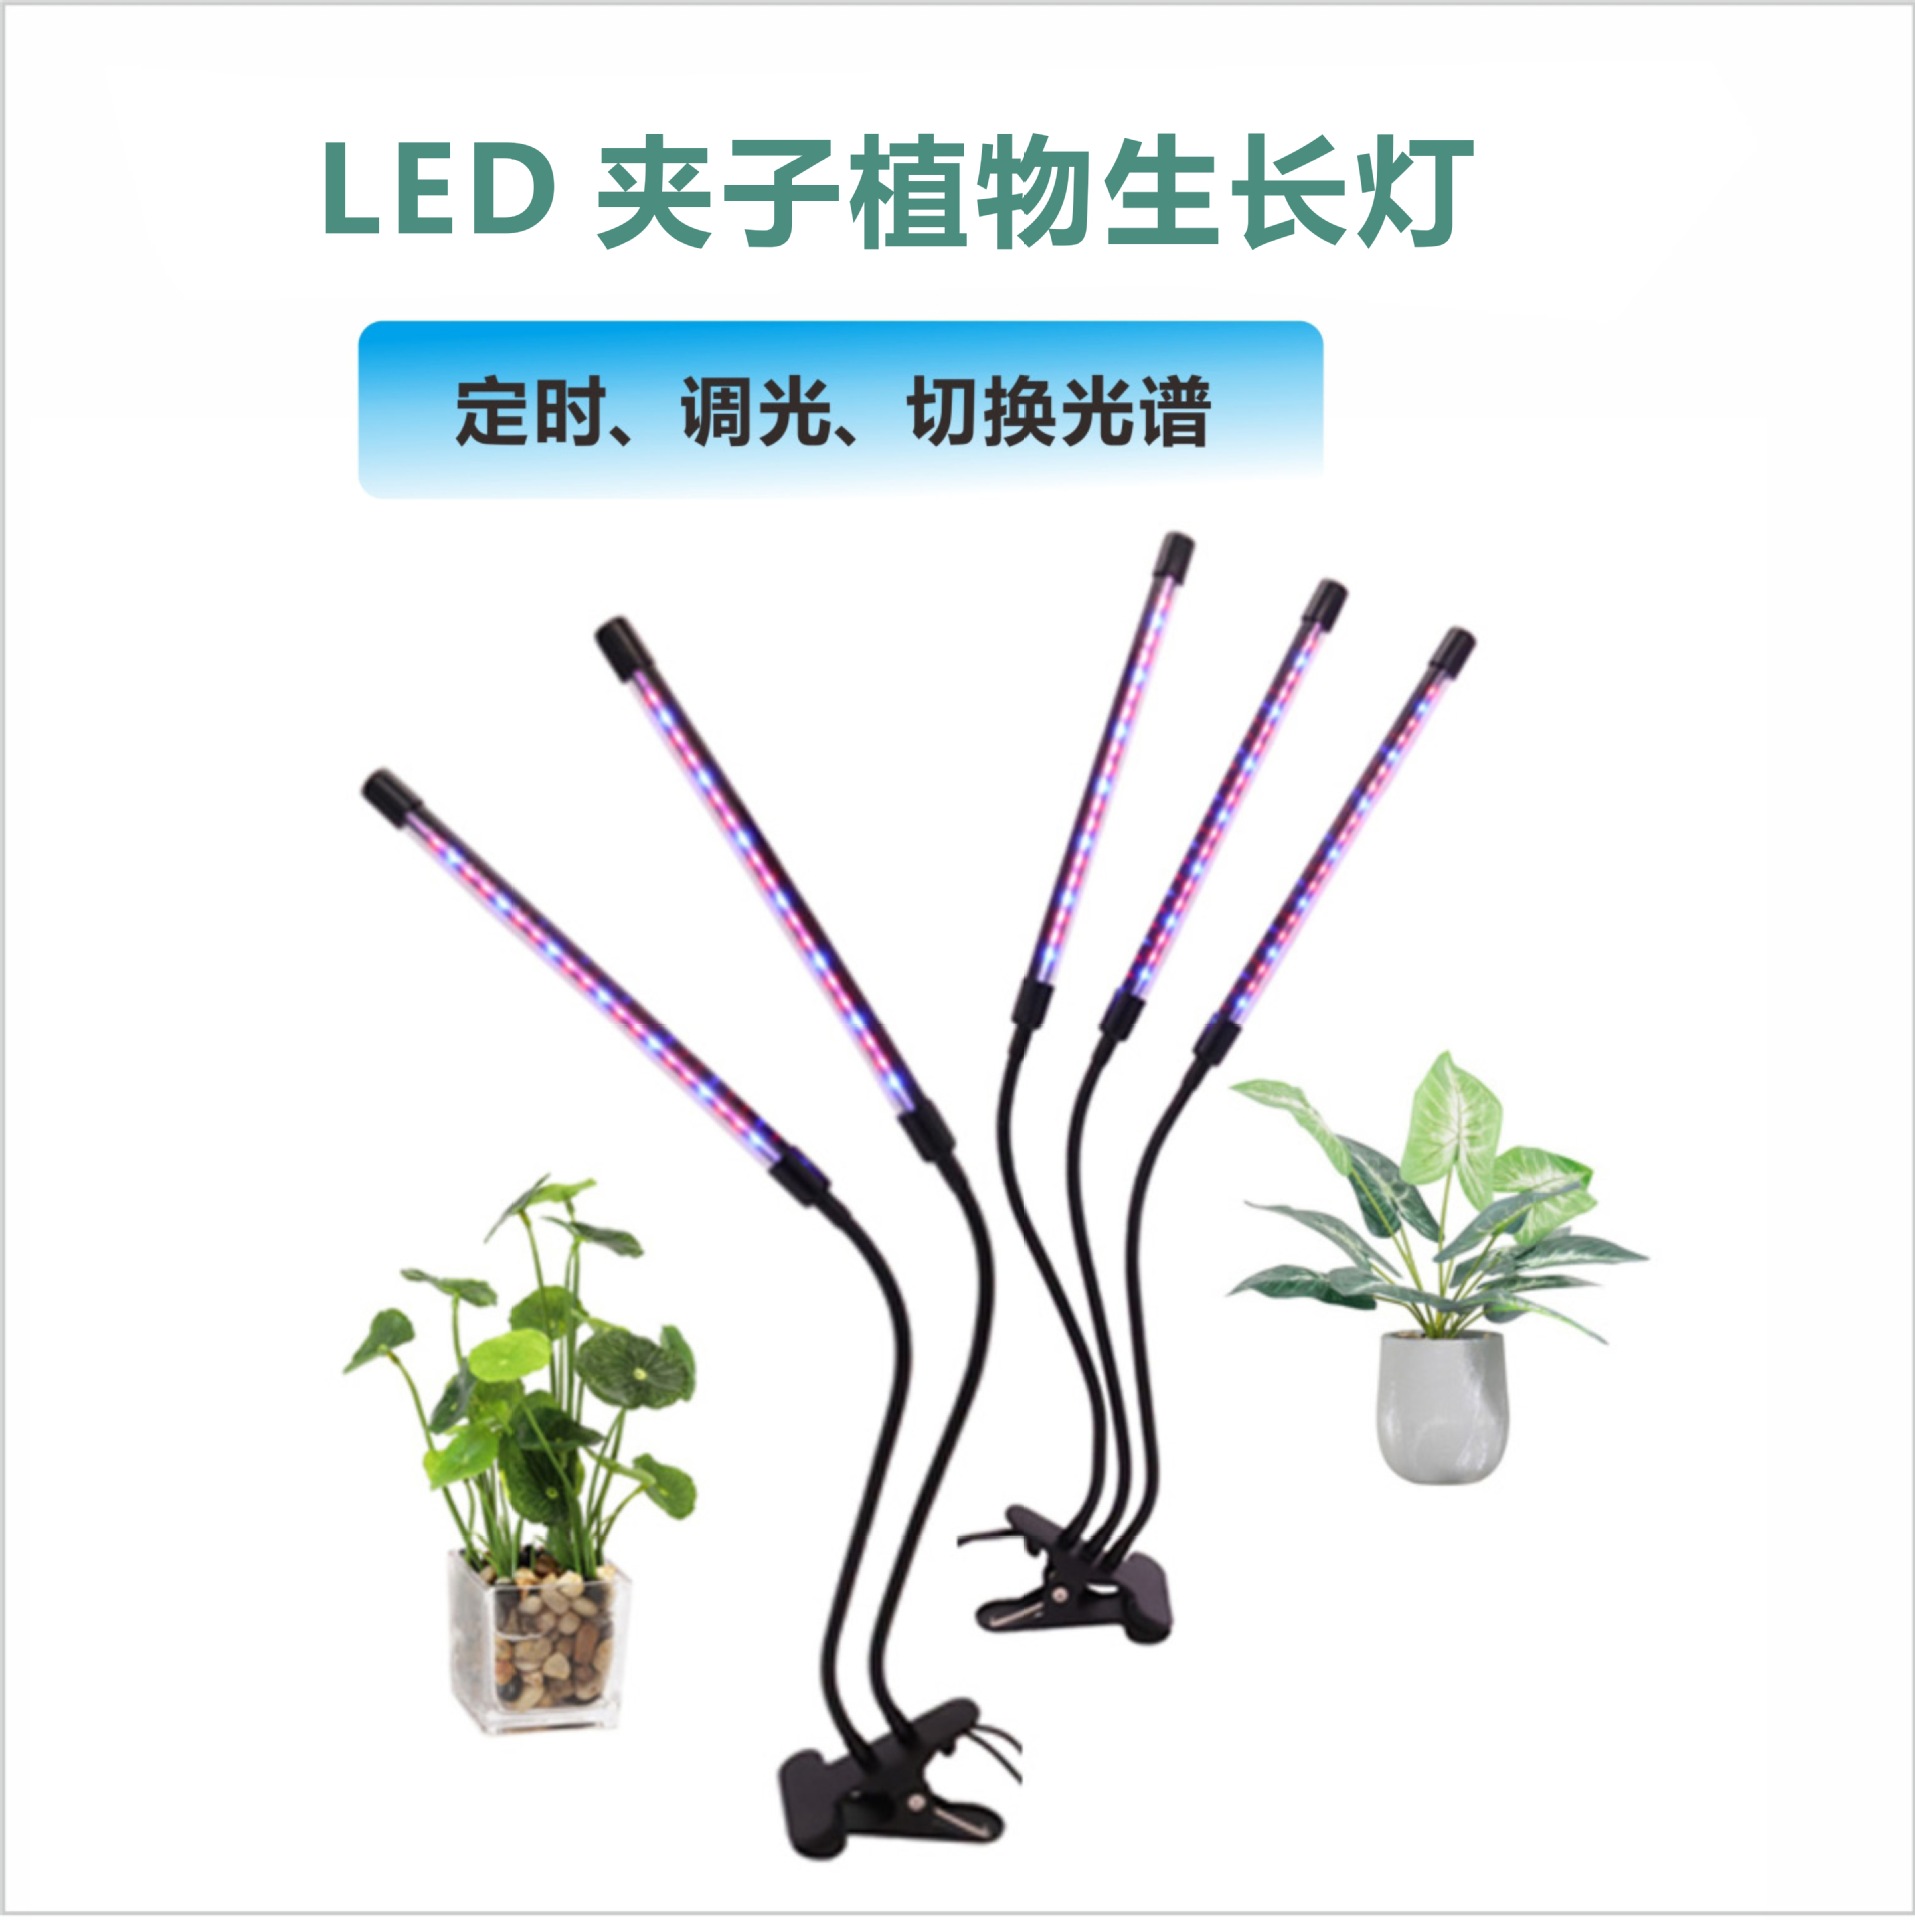 LED  夹子生长植物USB定时低压调光家用绿植花卉全光谱多肉补灯